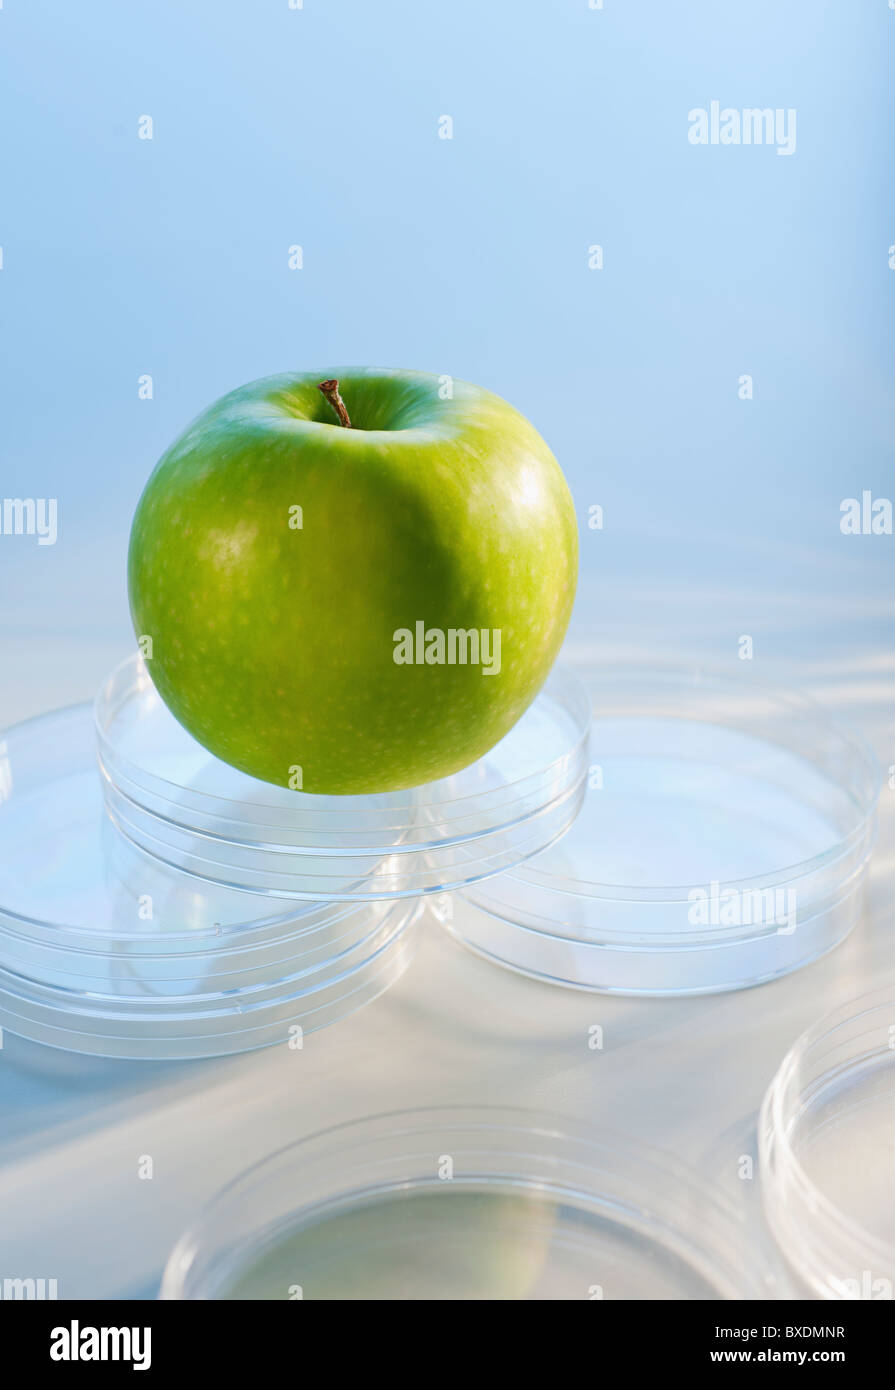 Apple in Petri dish Stock Photo